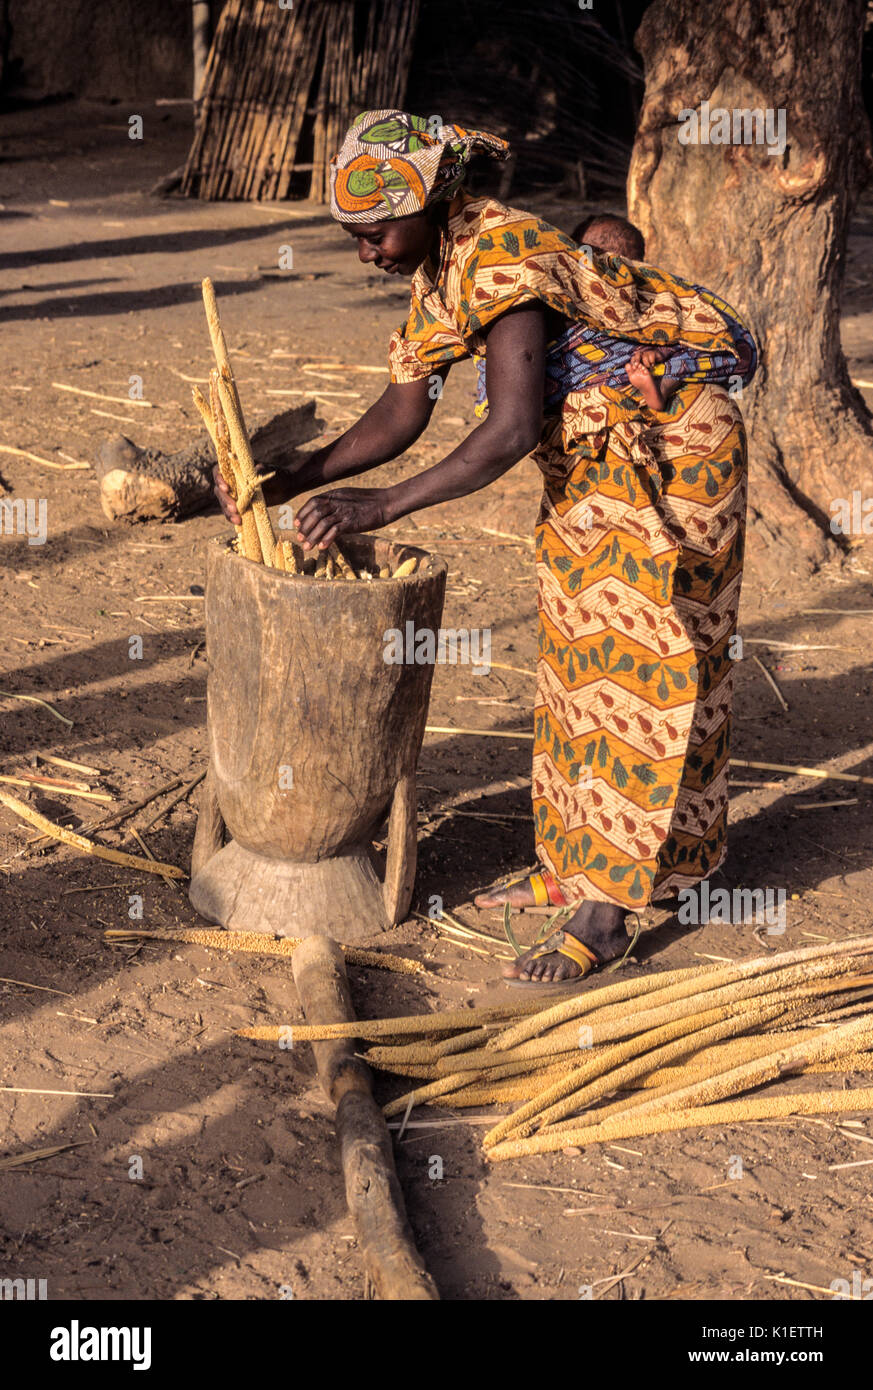 Le Niger, Afrique de l'Ouest. Jeune femme de mettre les tiges de mil dans le mortier en préparation pour battre entre eux pour faire de la farine. Banque D'Images